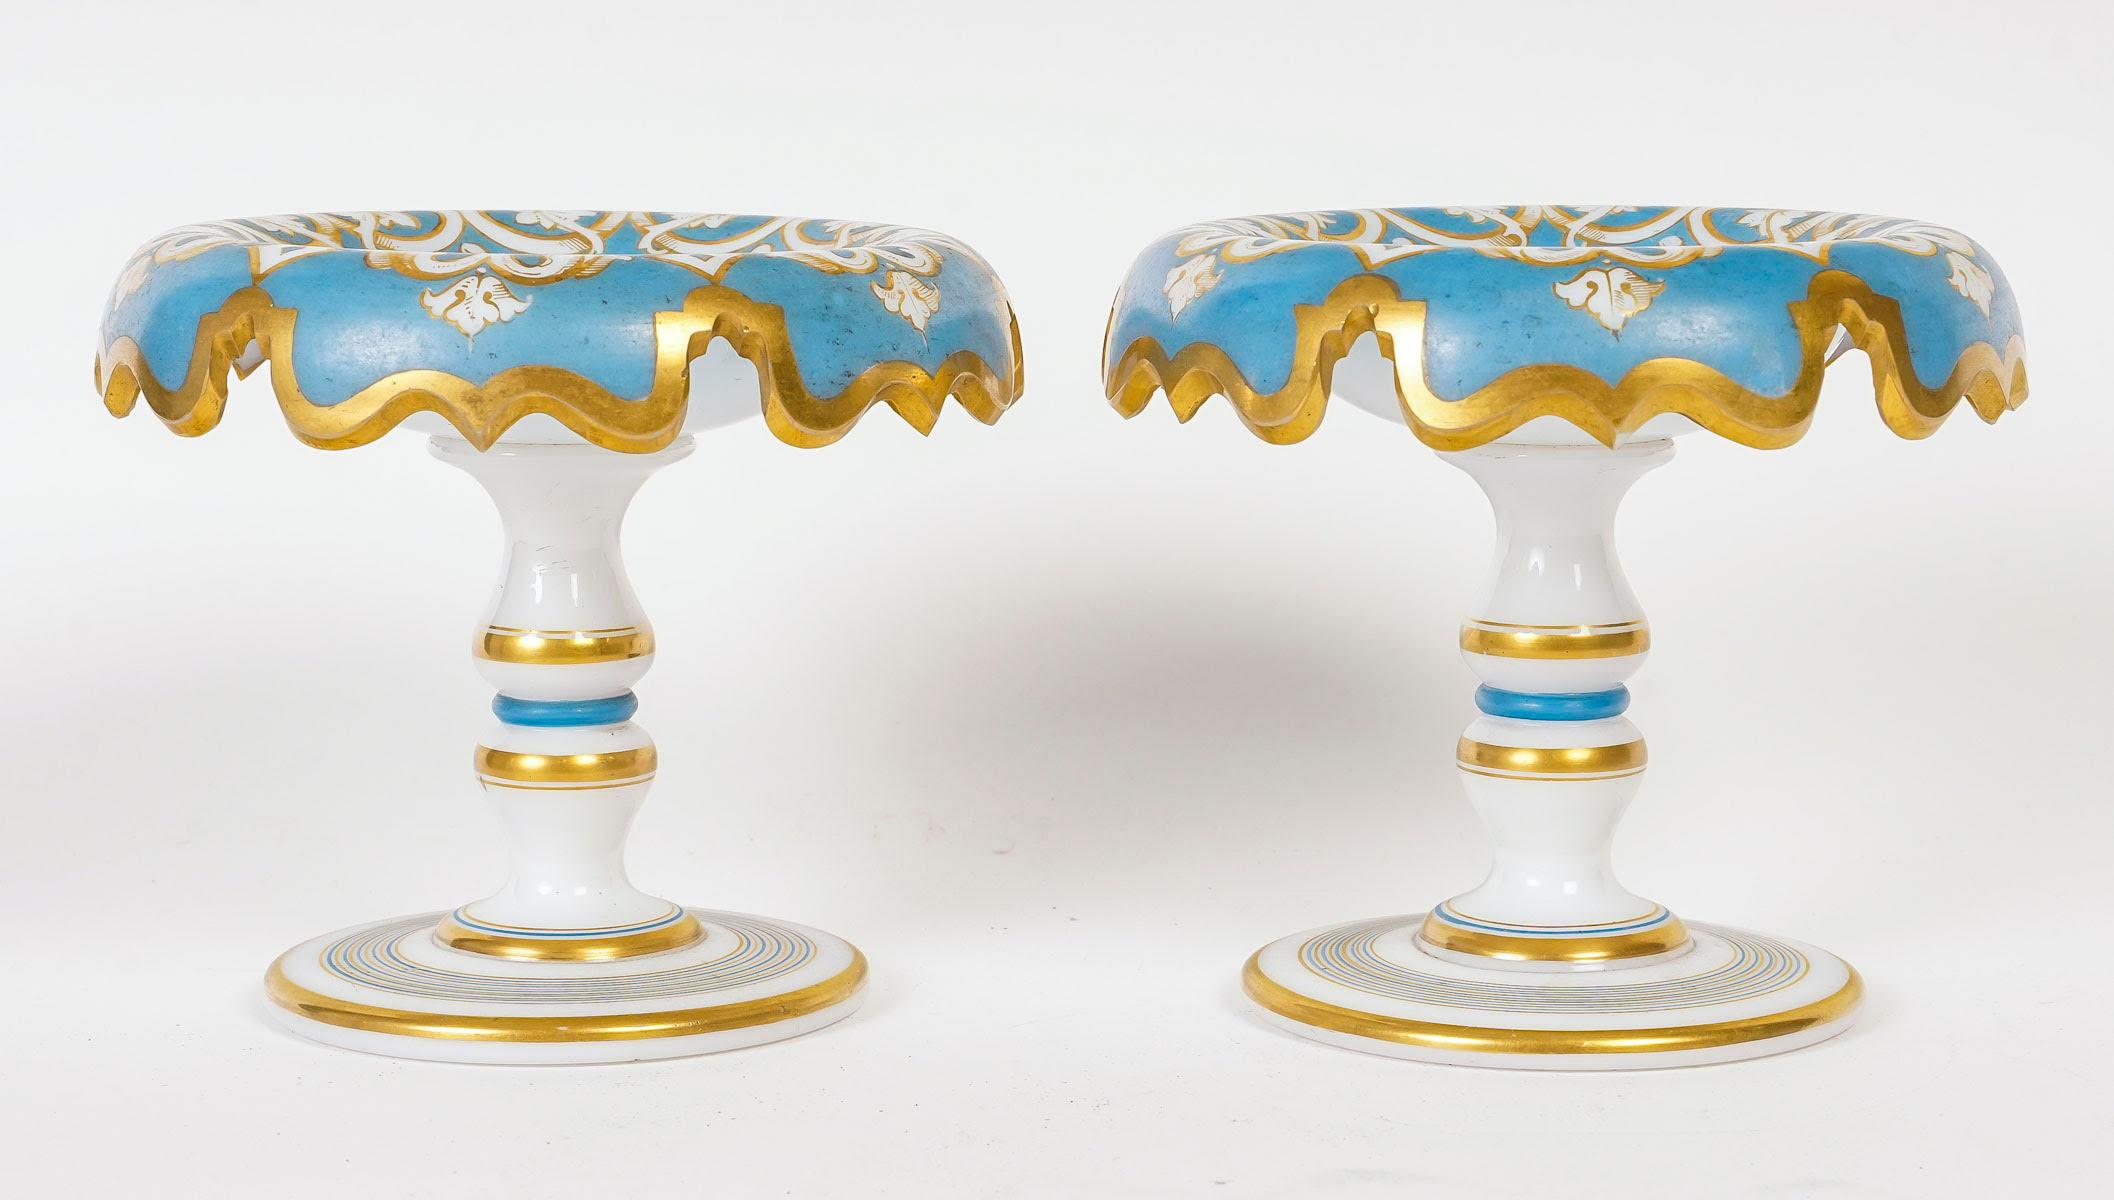 Paire de coupes en opaline bleu et or, XIXe siècle, période Napoléon III.

Paire de gobelets en opaline bleu et or d'époque Napoléon III, datant du XIXe siècle.
h : 12cm, l : 13cm